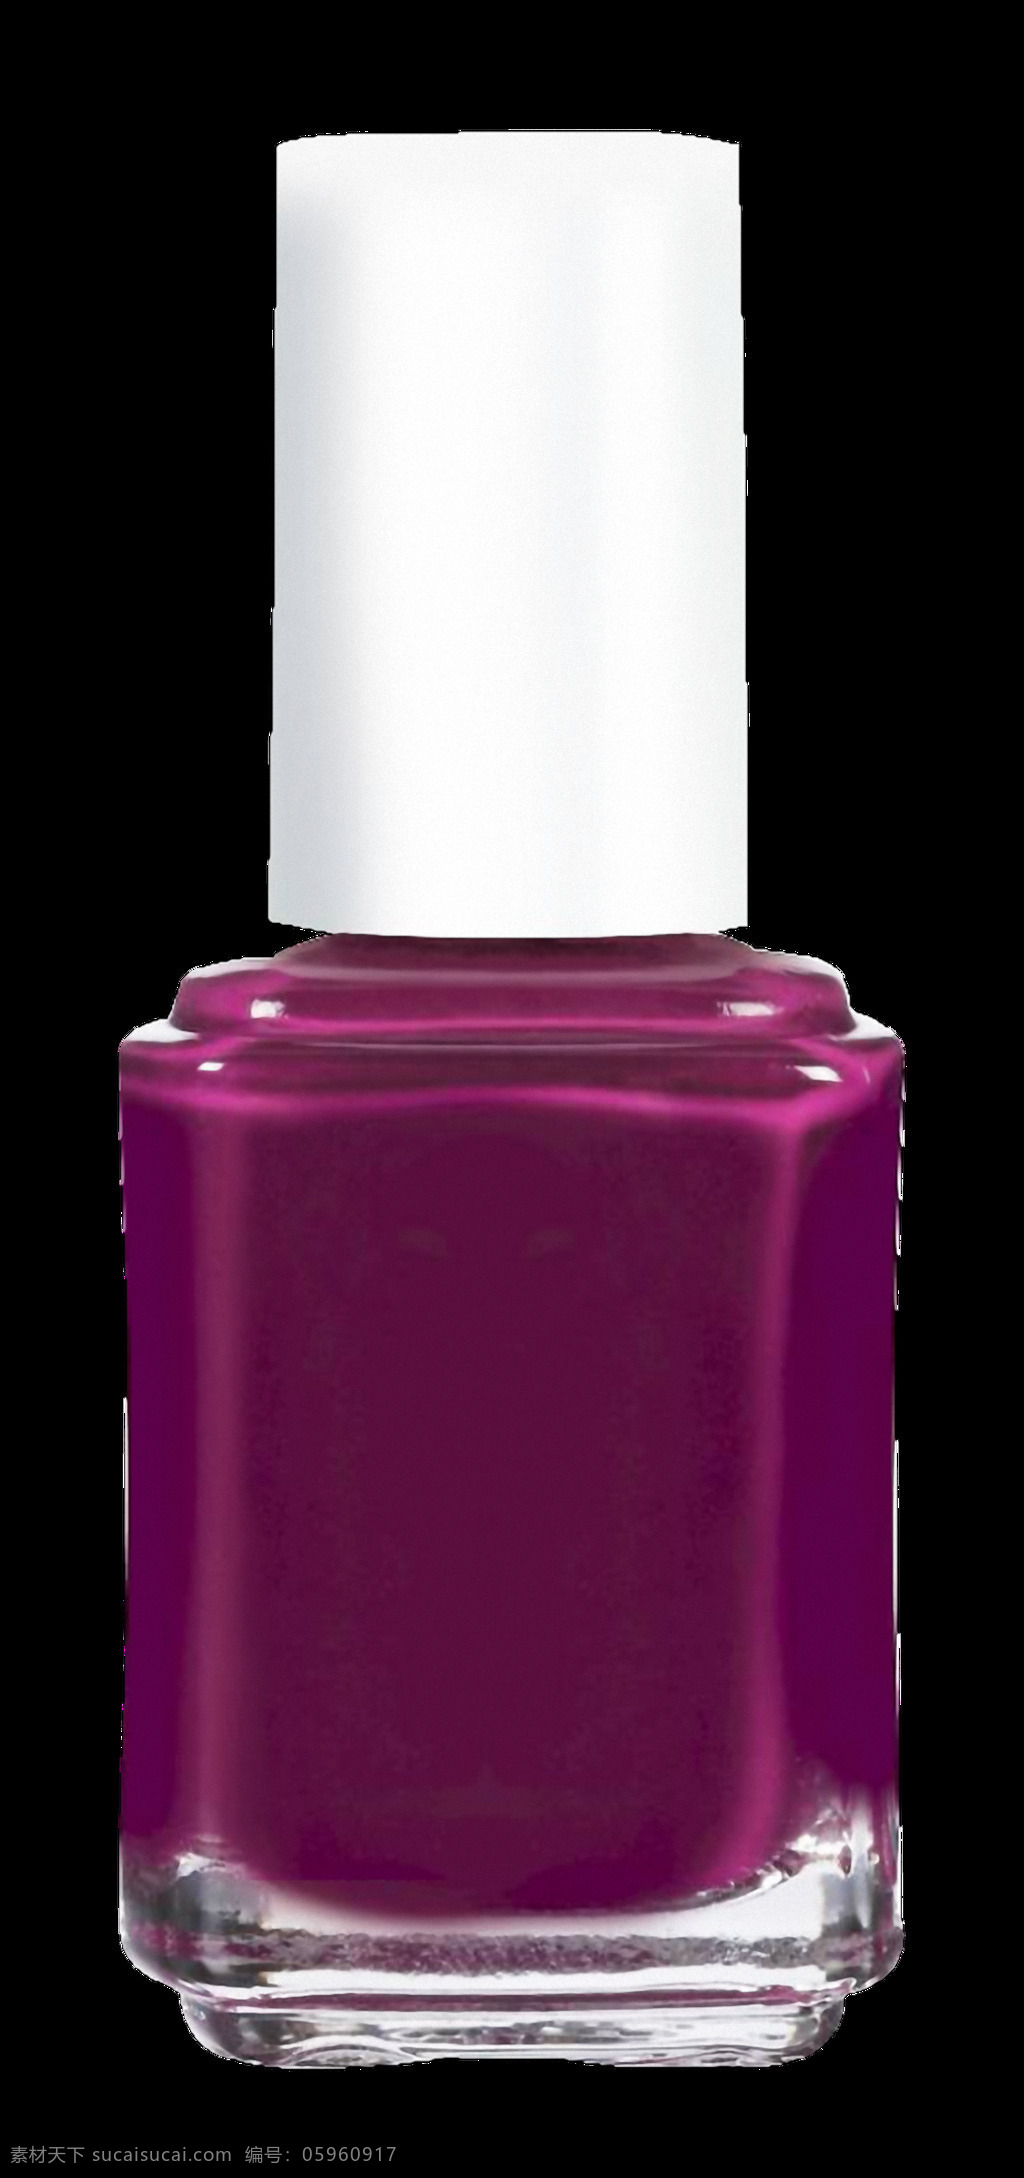 紫色 漂亮 指甲油 免 抠 透明 紫色指甲油 美甲油图片 漂亮指甲油 指甲油瓶子